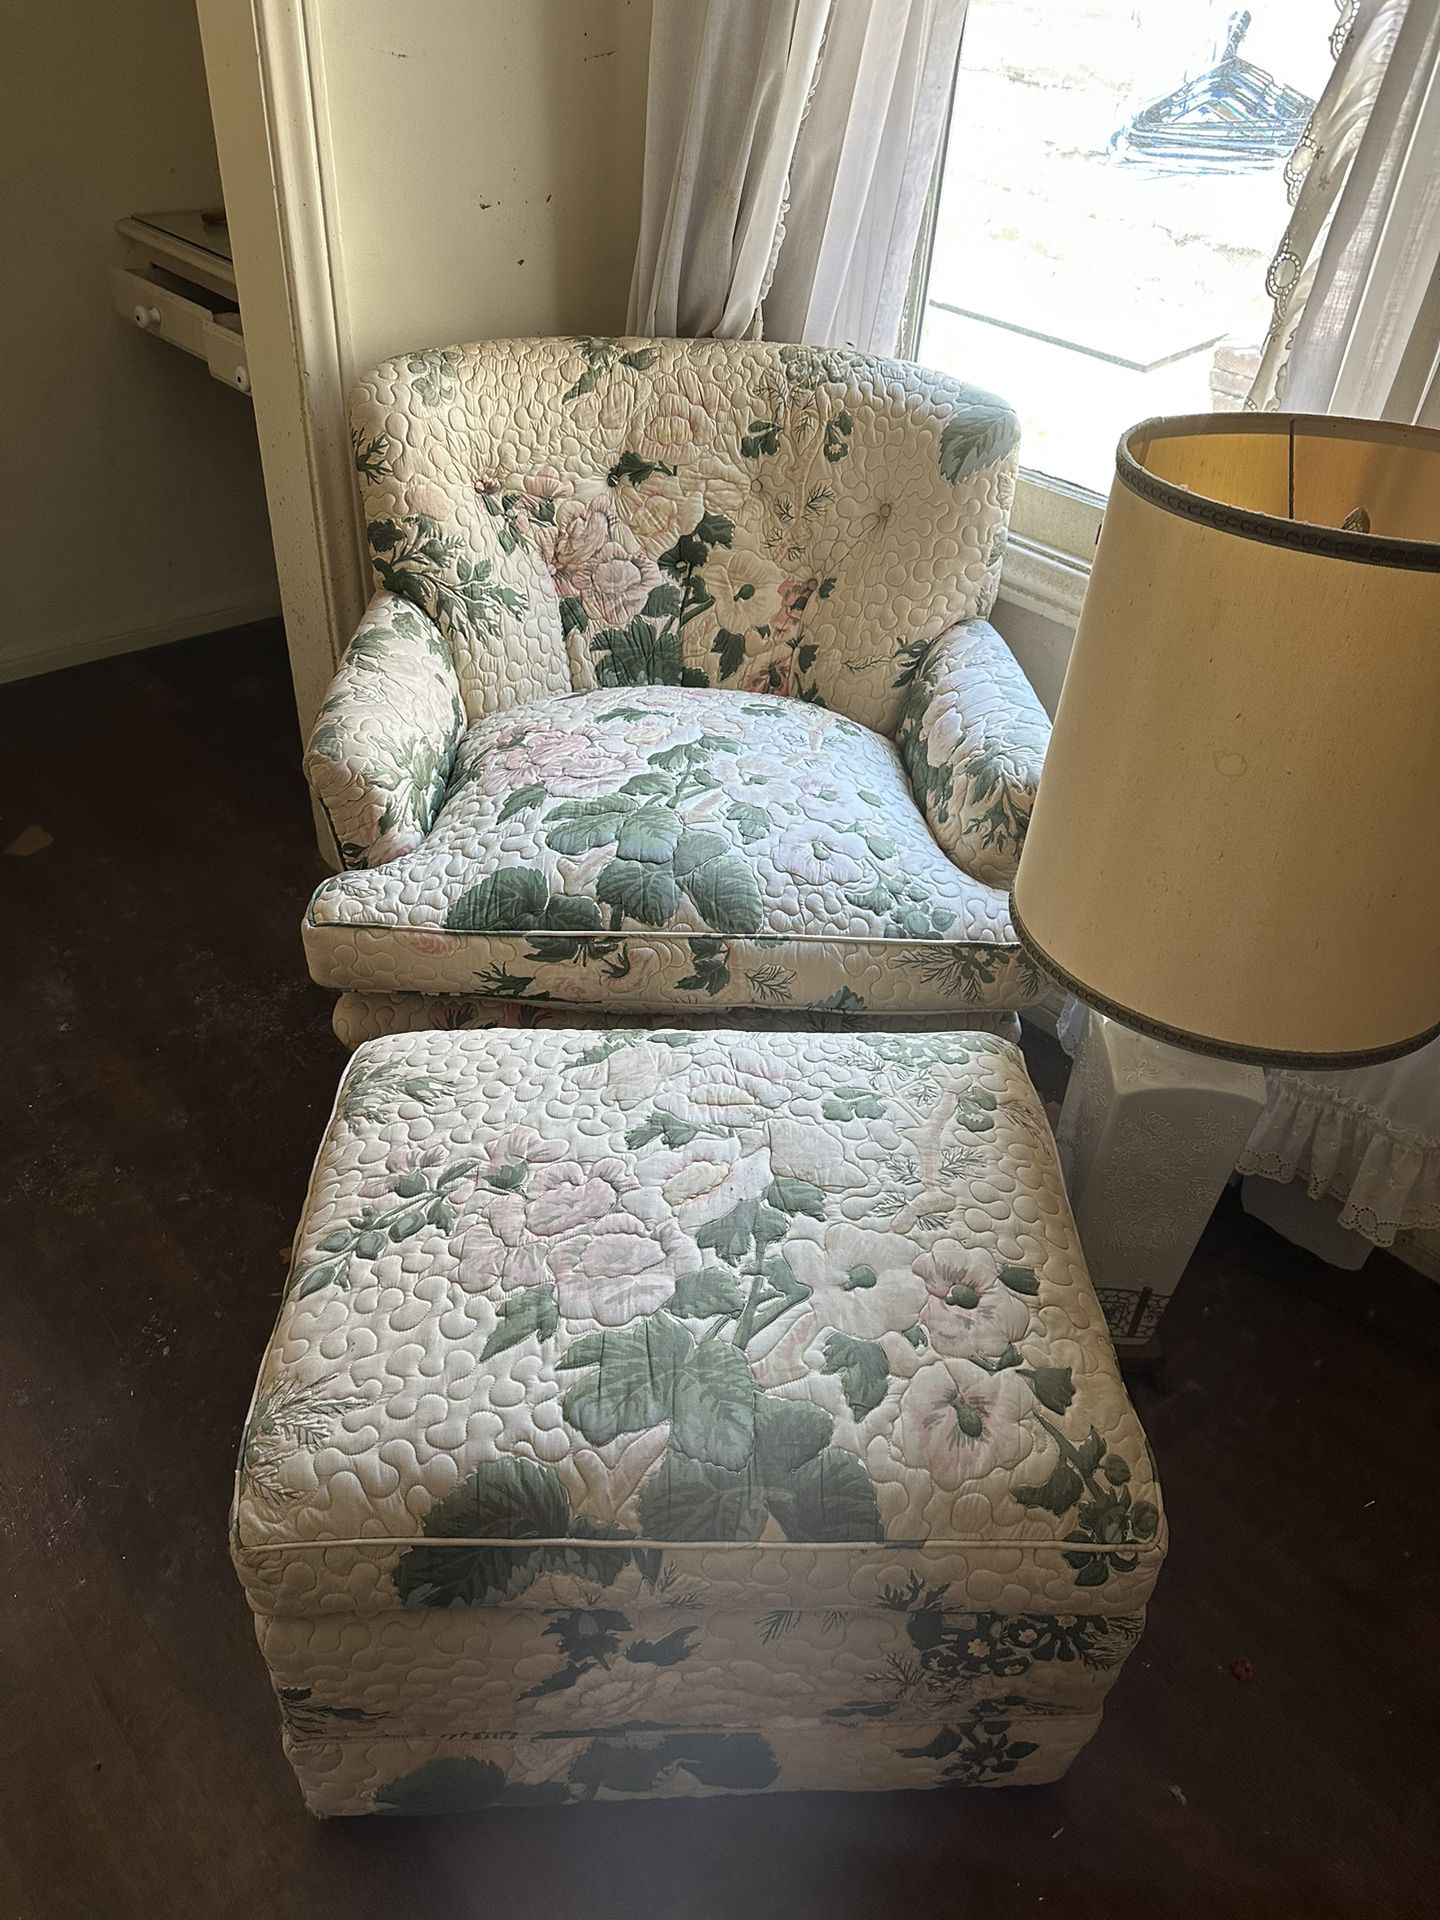 Sofa chair w/ ottoman  